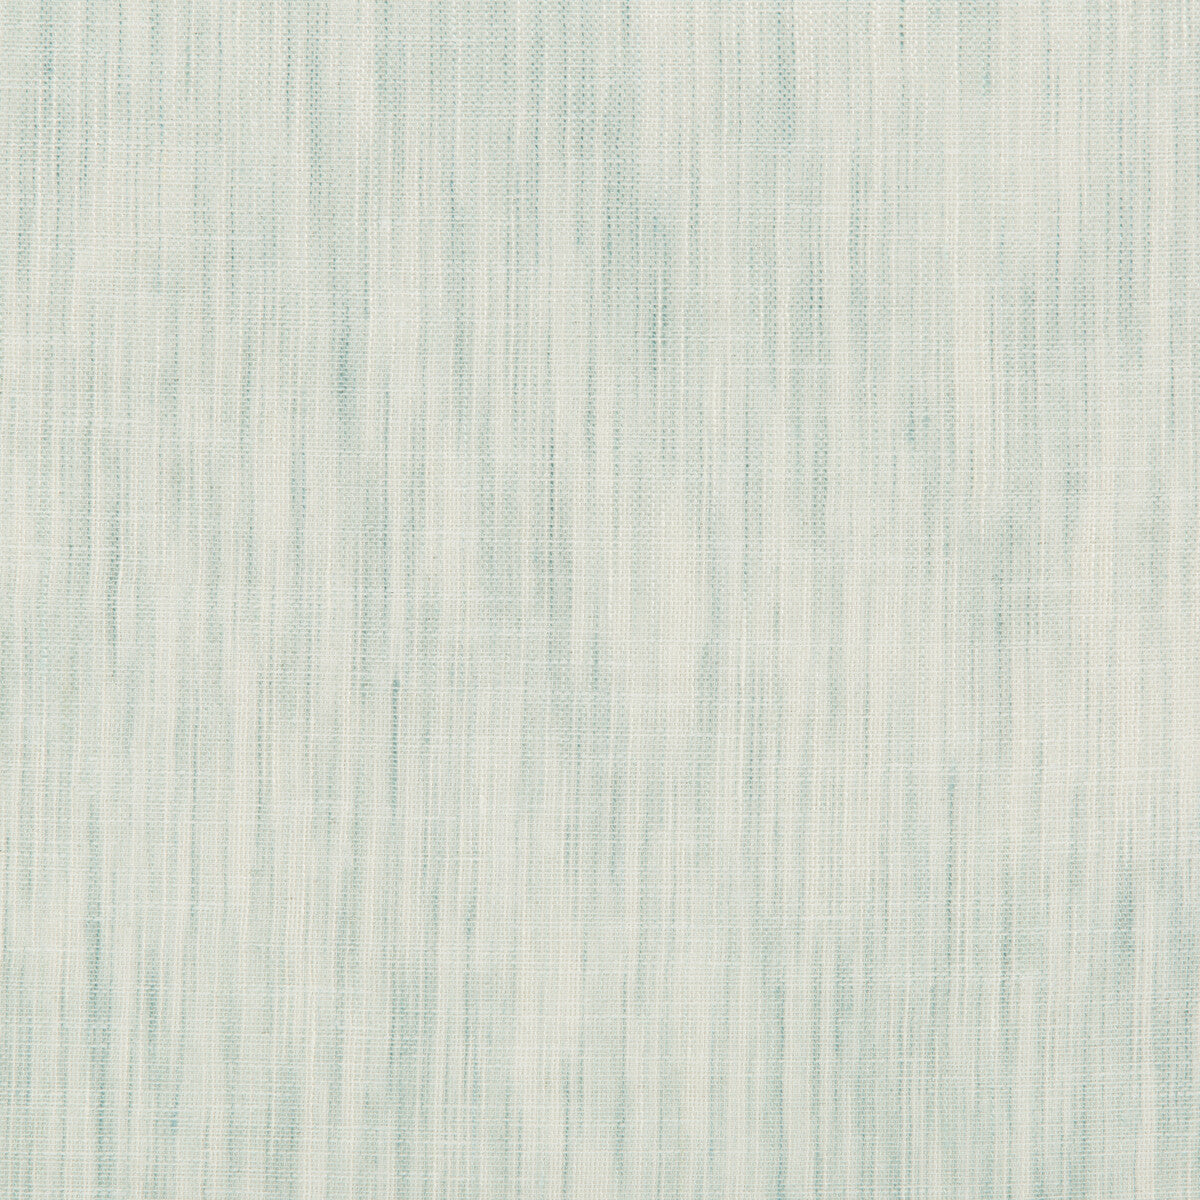 Kravet Design fabric in 4587-135 color - pattern 4587.135.0 - by Kravet Design